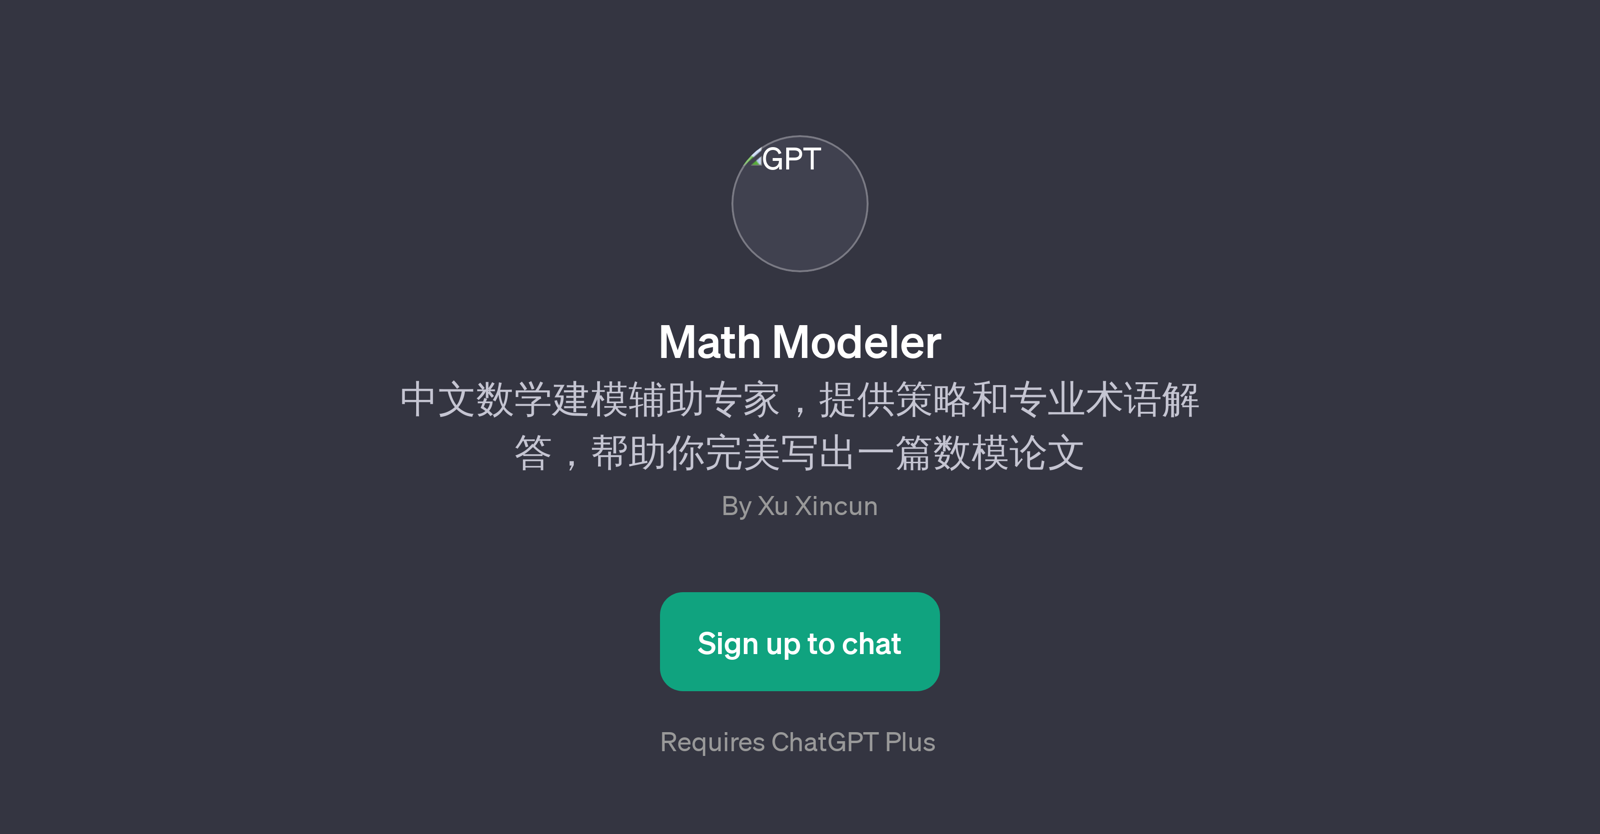 Math Modeler website